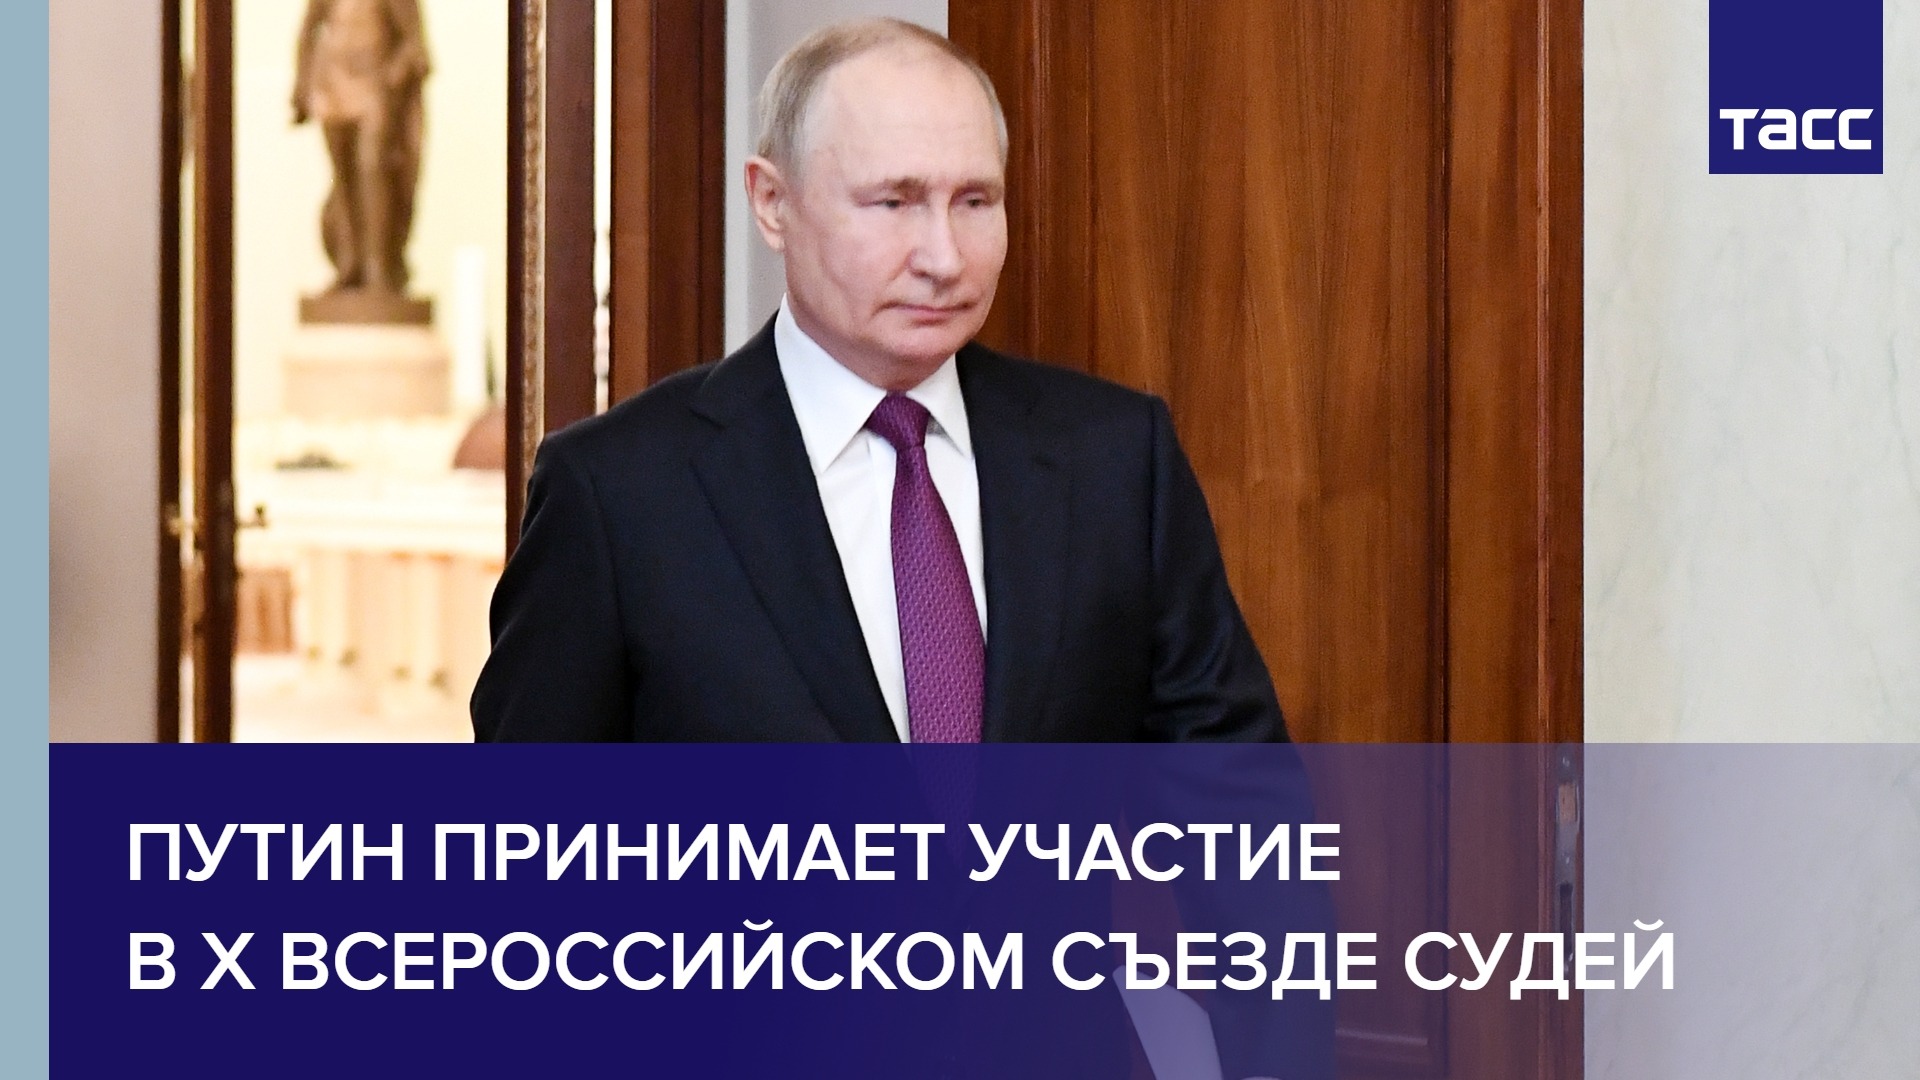 Путин принимает участие в X Всероссийском съезде судей